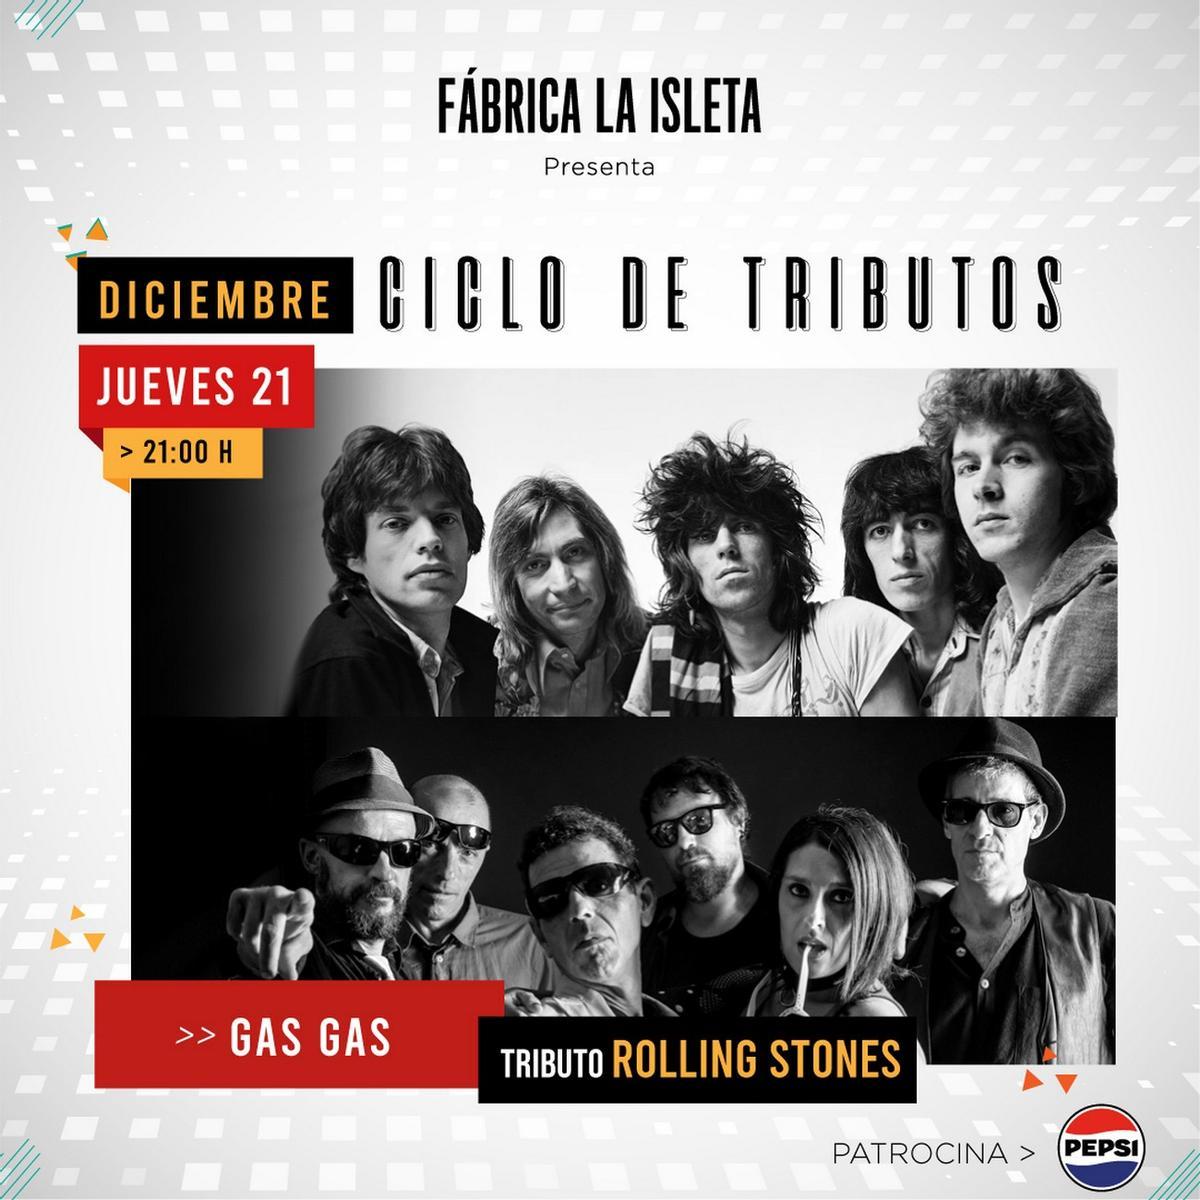 Tributo a The Rolling Stones, el espectáculo Great Women y Fiesta pre Navidad entre los destacados de Fábrica La Isleta esta semana.